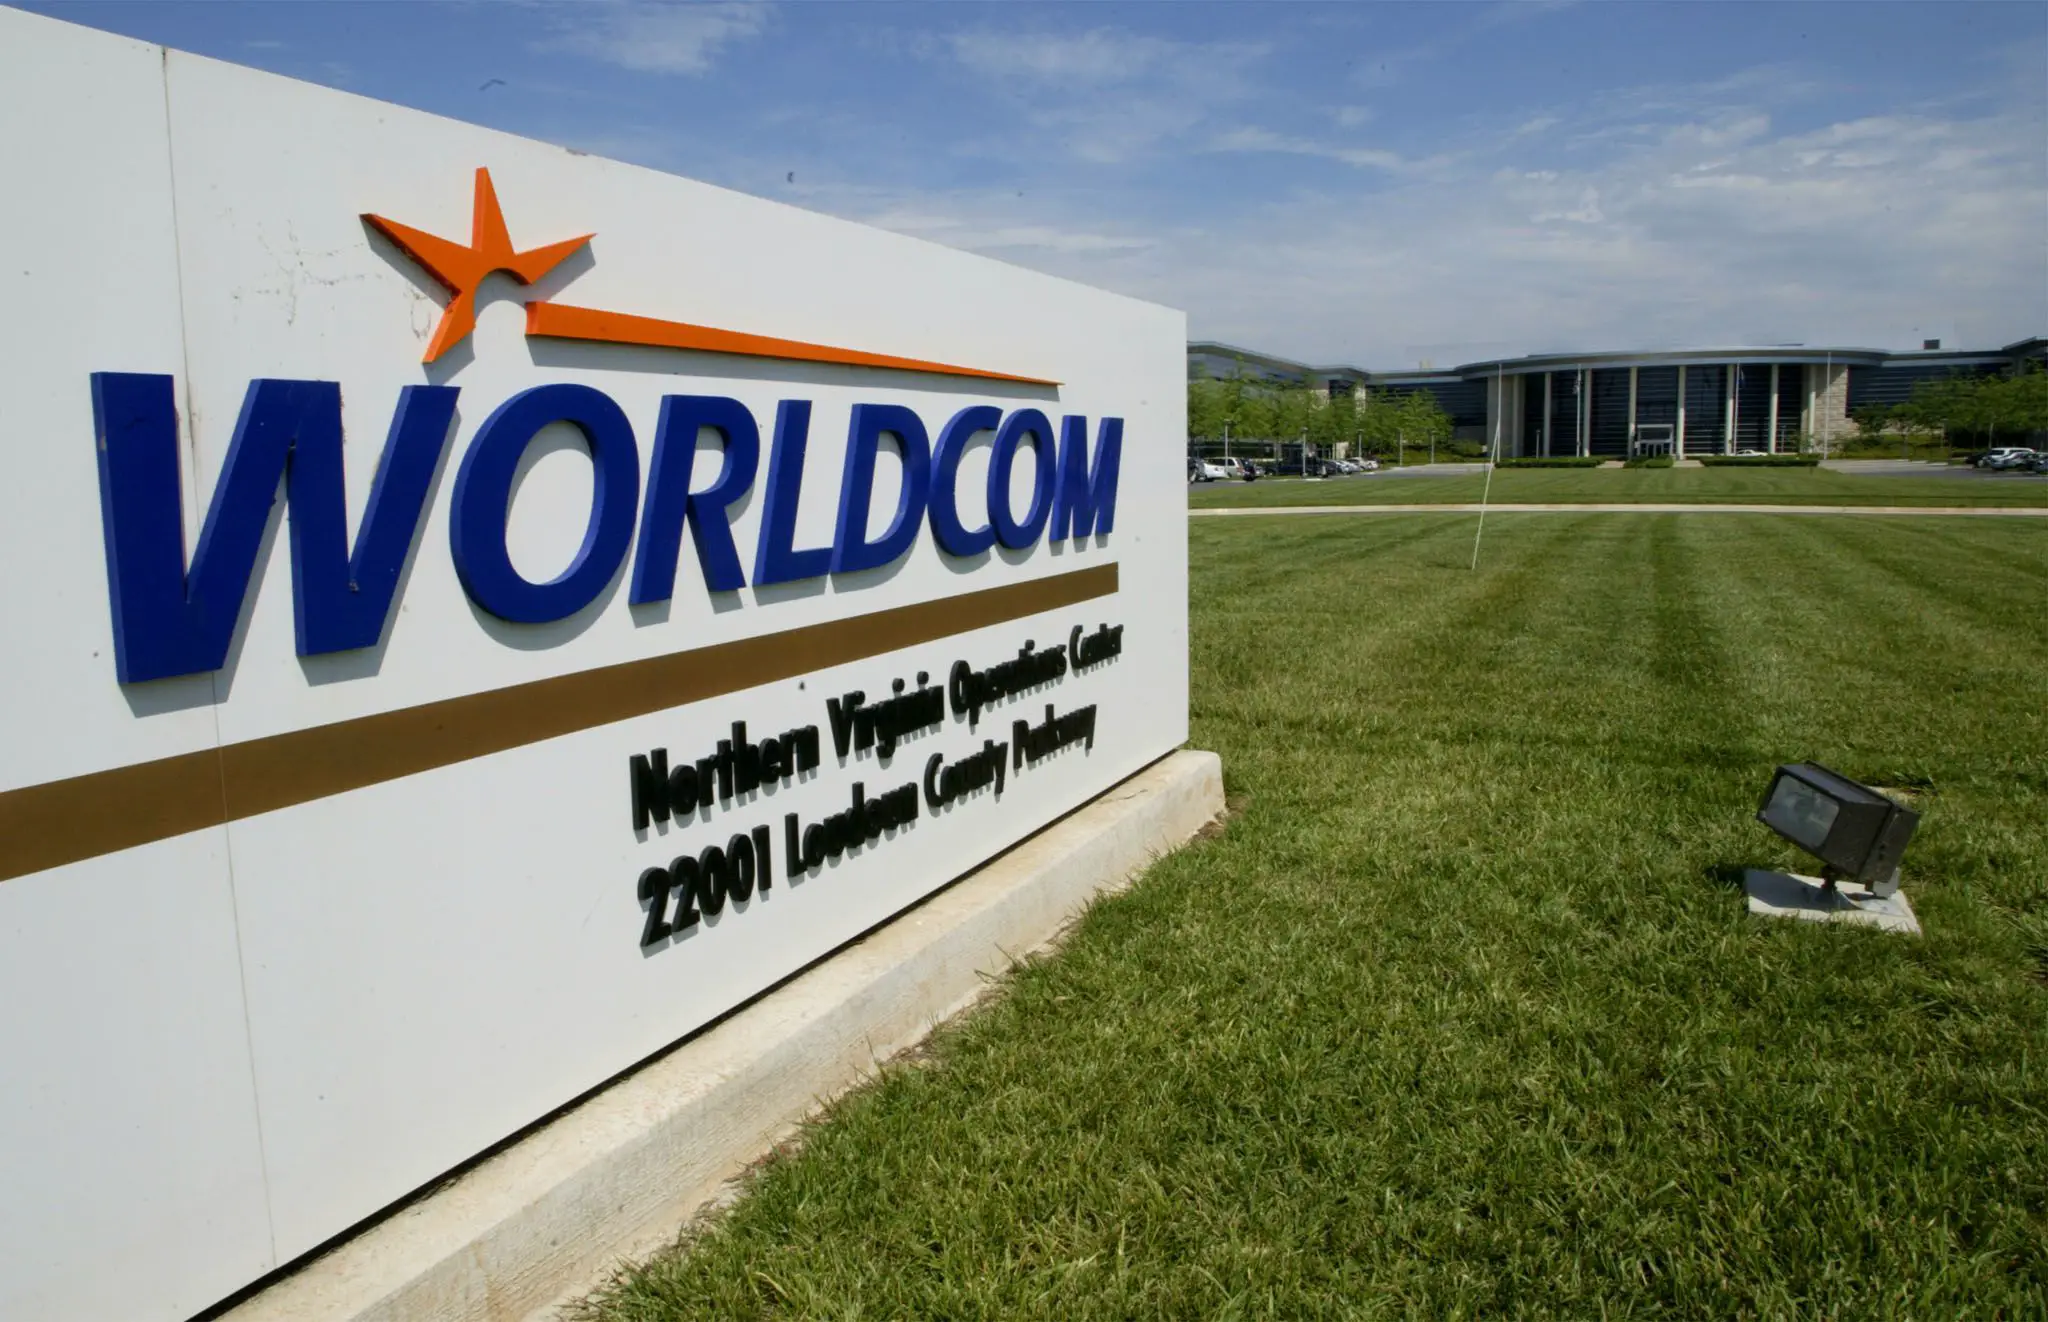 World s com. Worldcom. Worldcom компания. Дело Worldcom. World com компания.